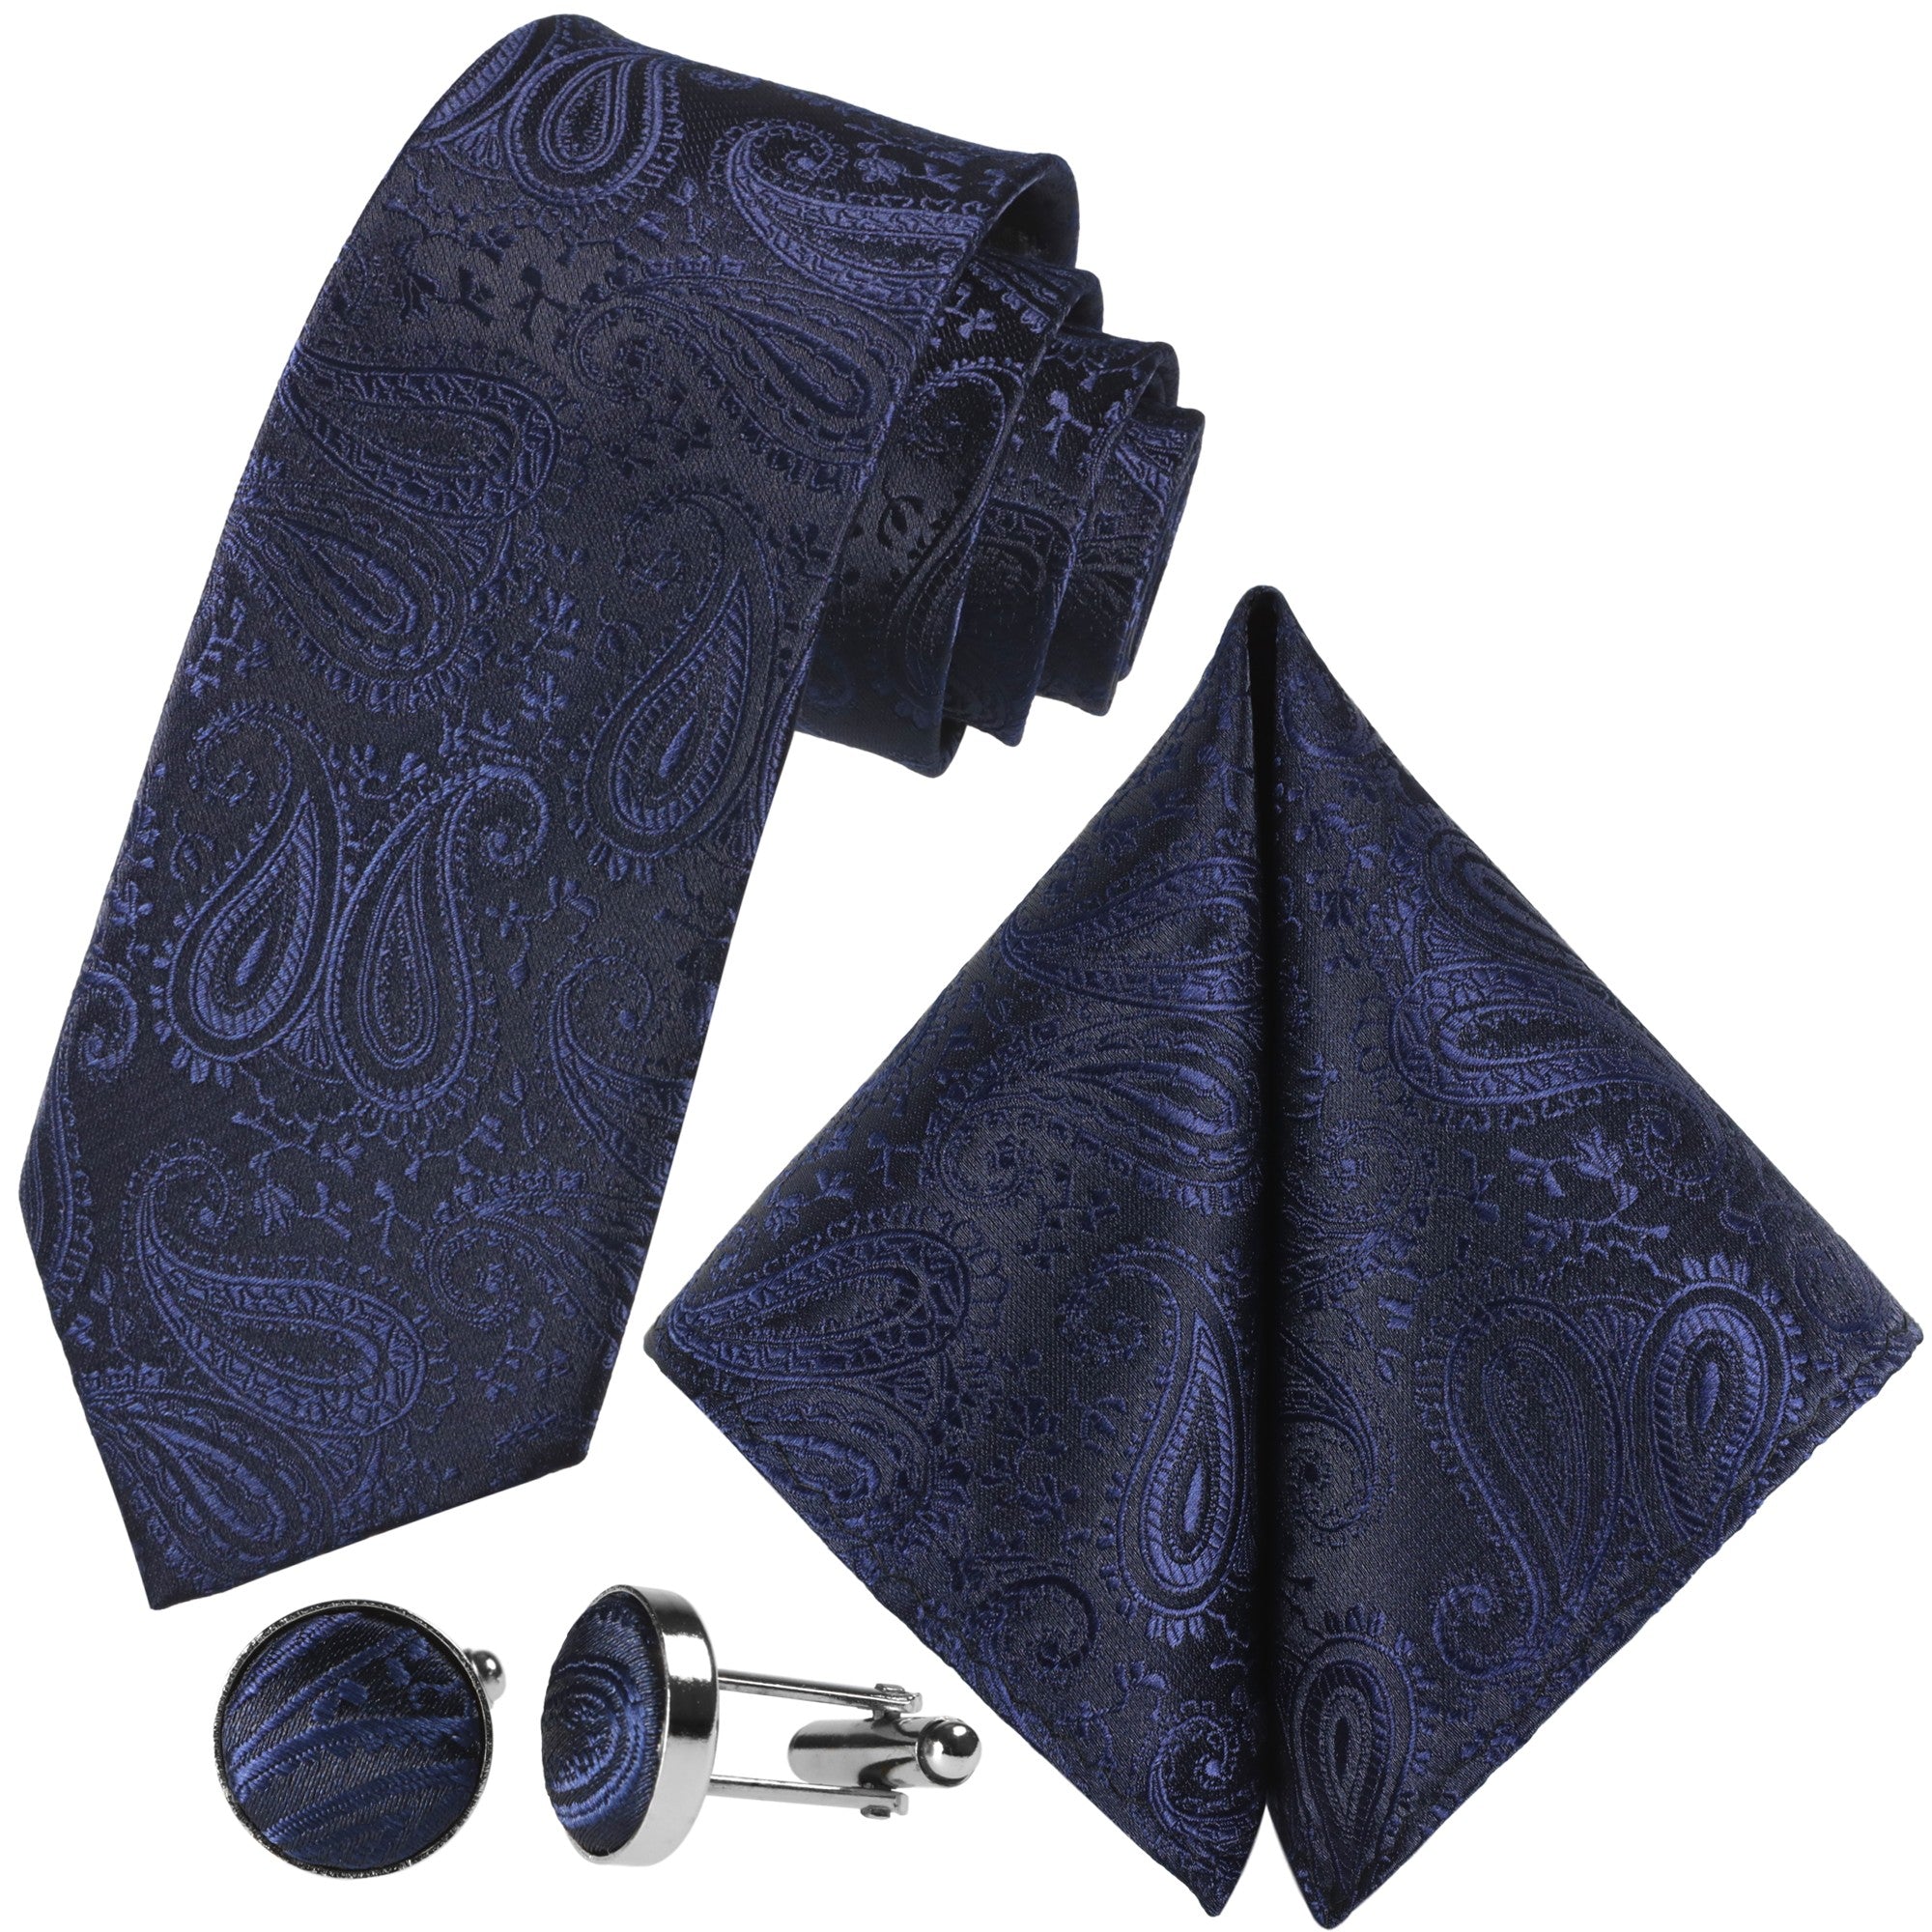 Kaufen Sie Silber-Blaue Paisley-Krawatte | GASSANIshop.de Krawatten - für designt GASSANI